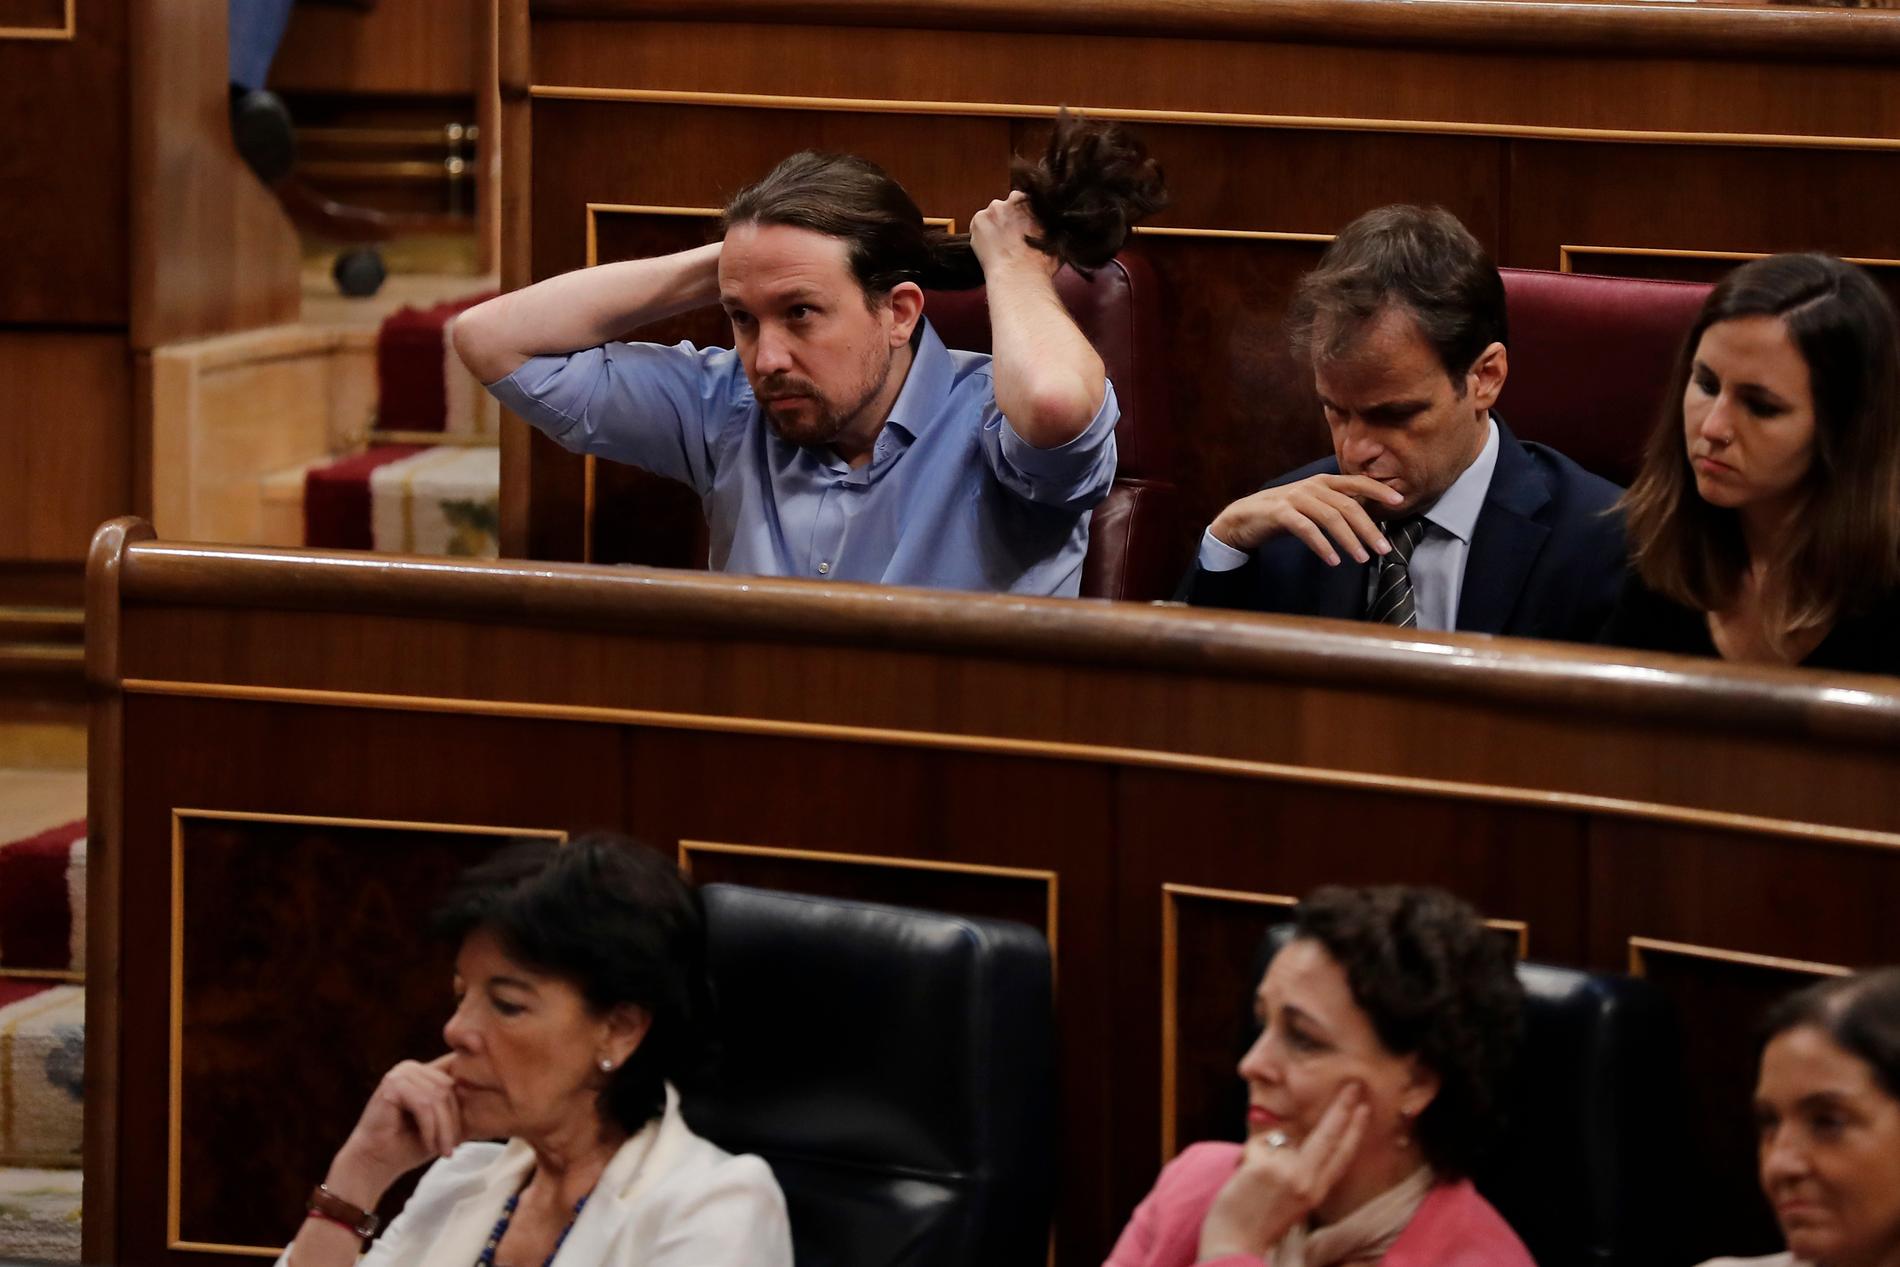 Vänsterpartiet Podemos ledare Pablo Iglesias hoppas att hans parti ska få mycket makt i en regering. Själv har han gått med på att inte sitta i den, efter krav från förhandlingspartnern socialdemokratiska PSOE.